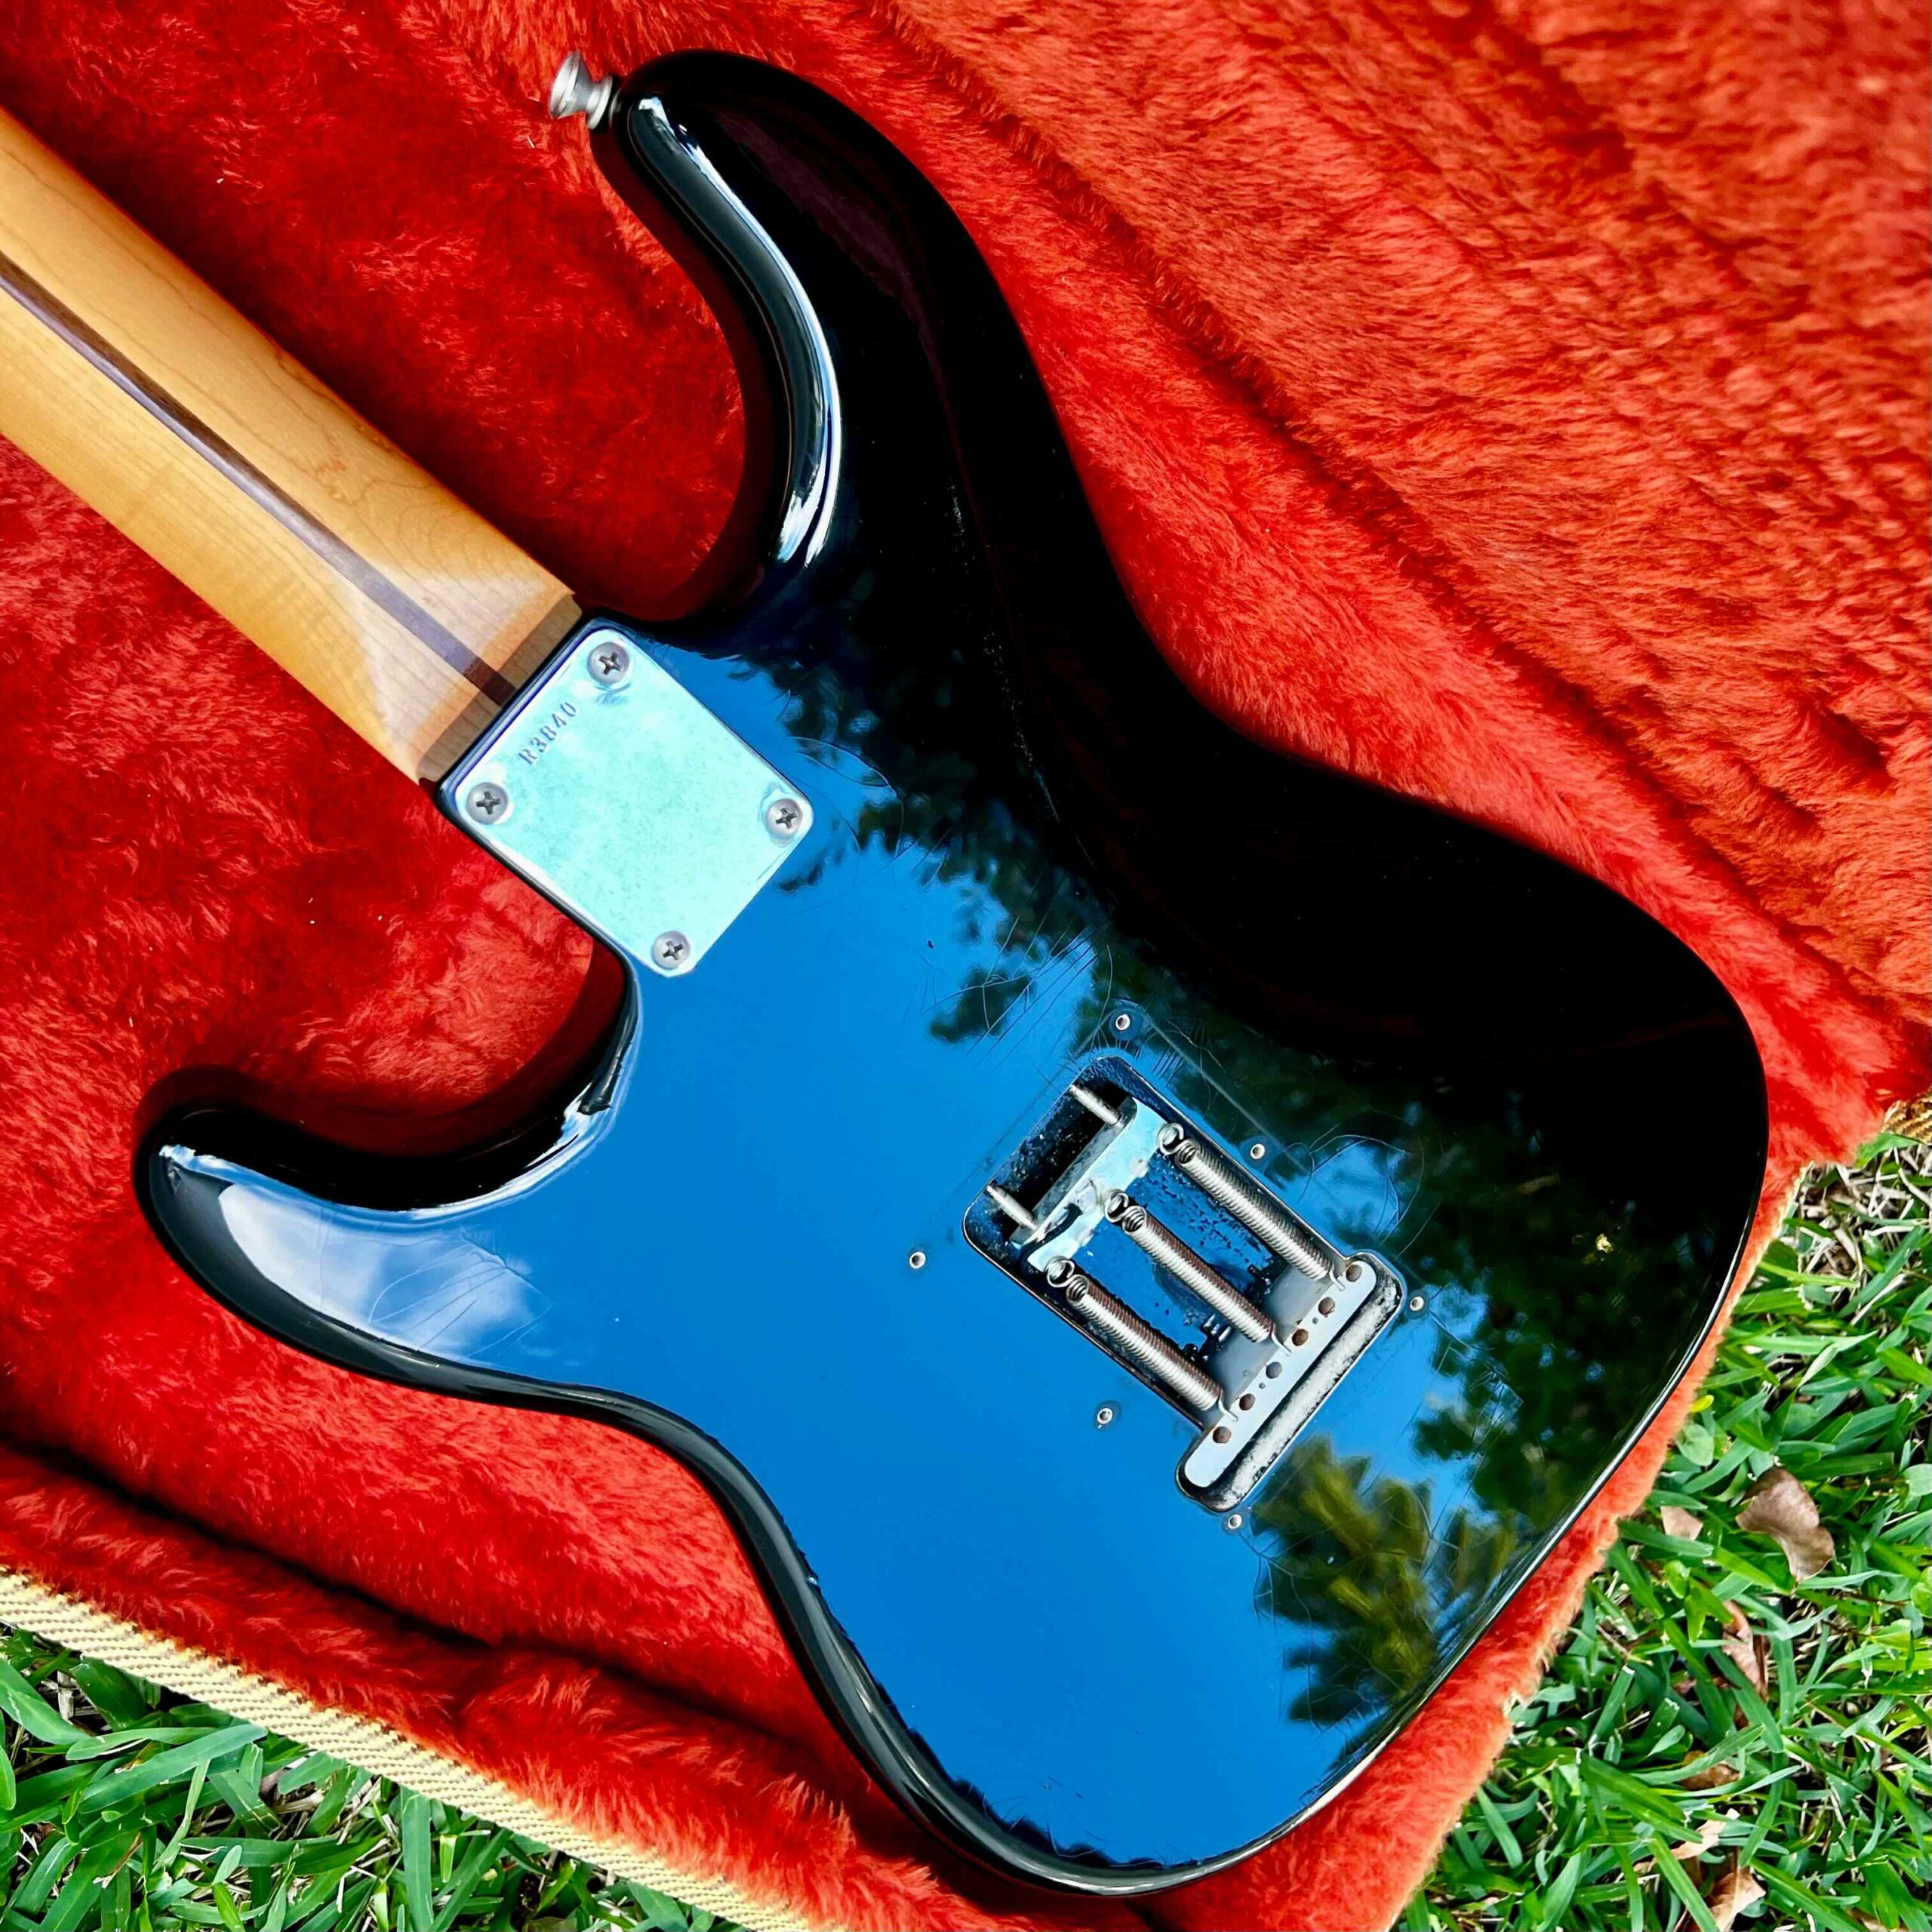 Fender Custom Shop 1956 Stratocaster Closet Classic with Original Hard Case